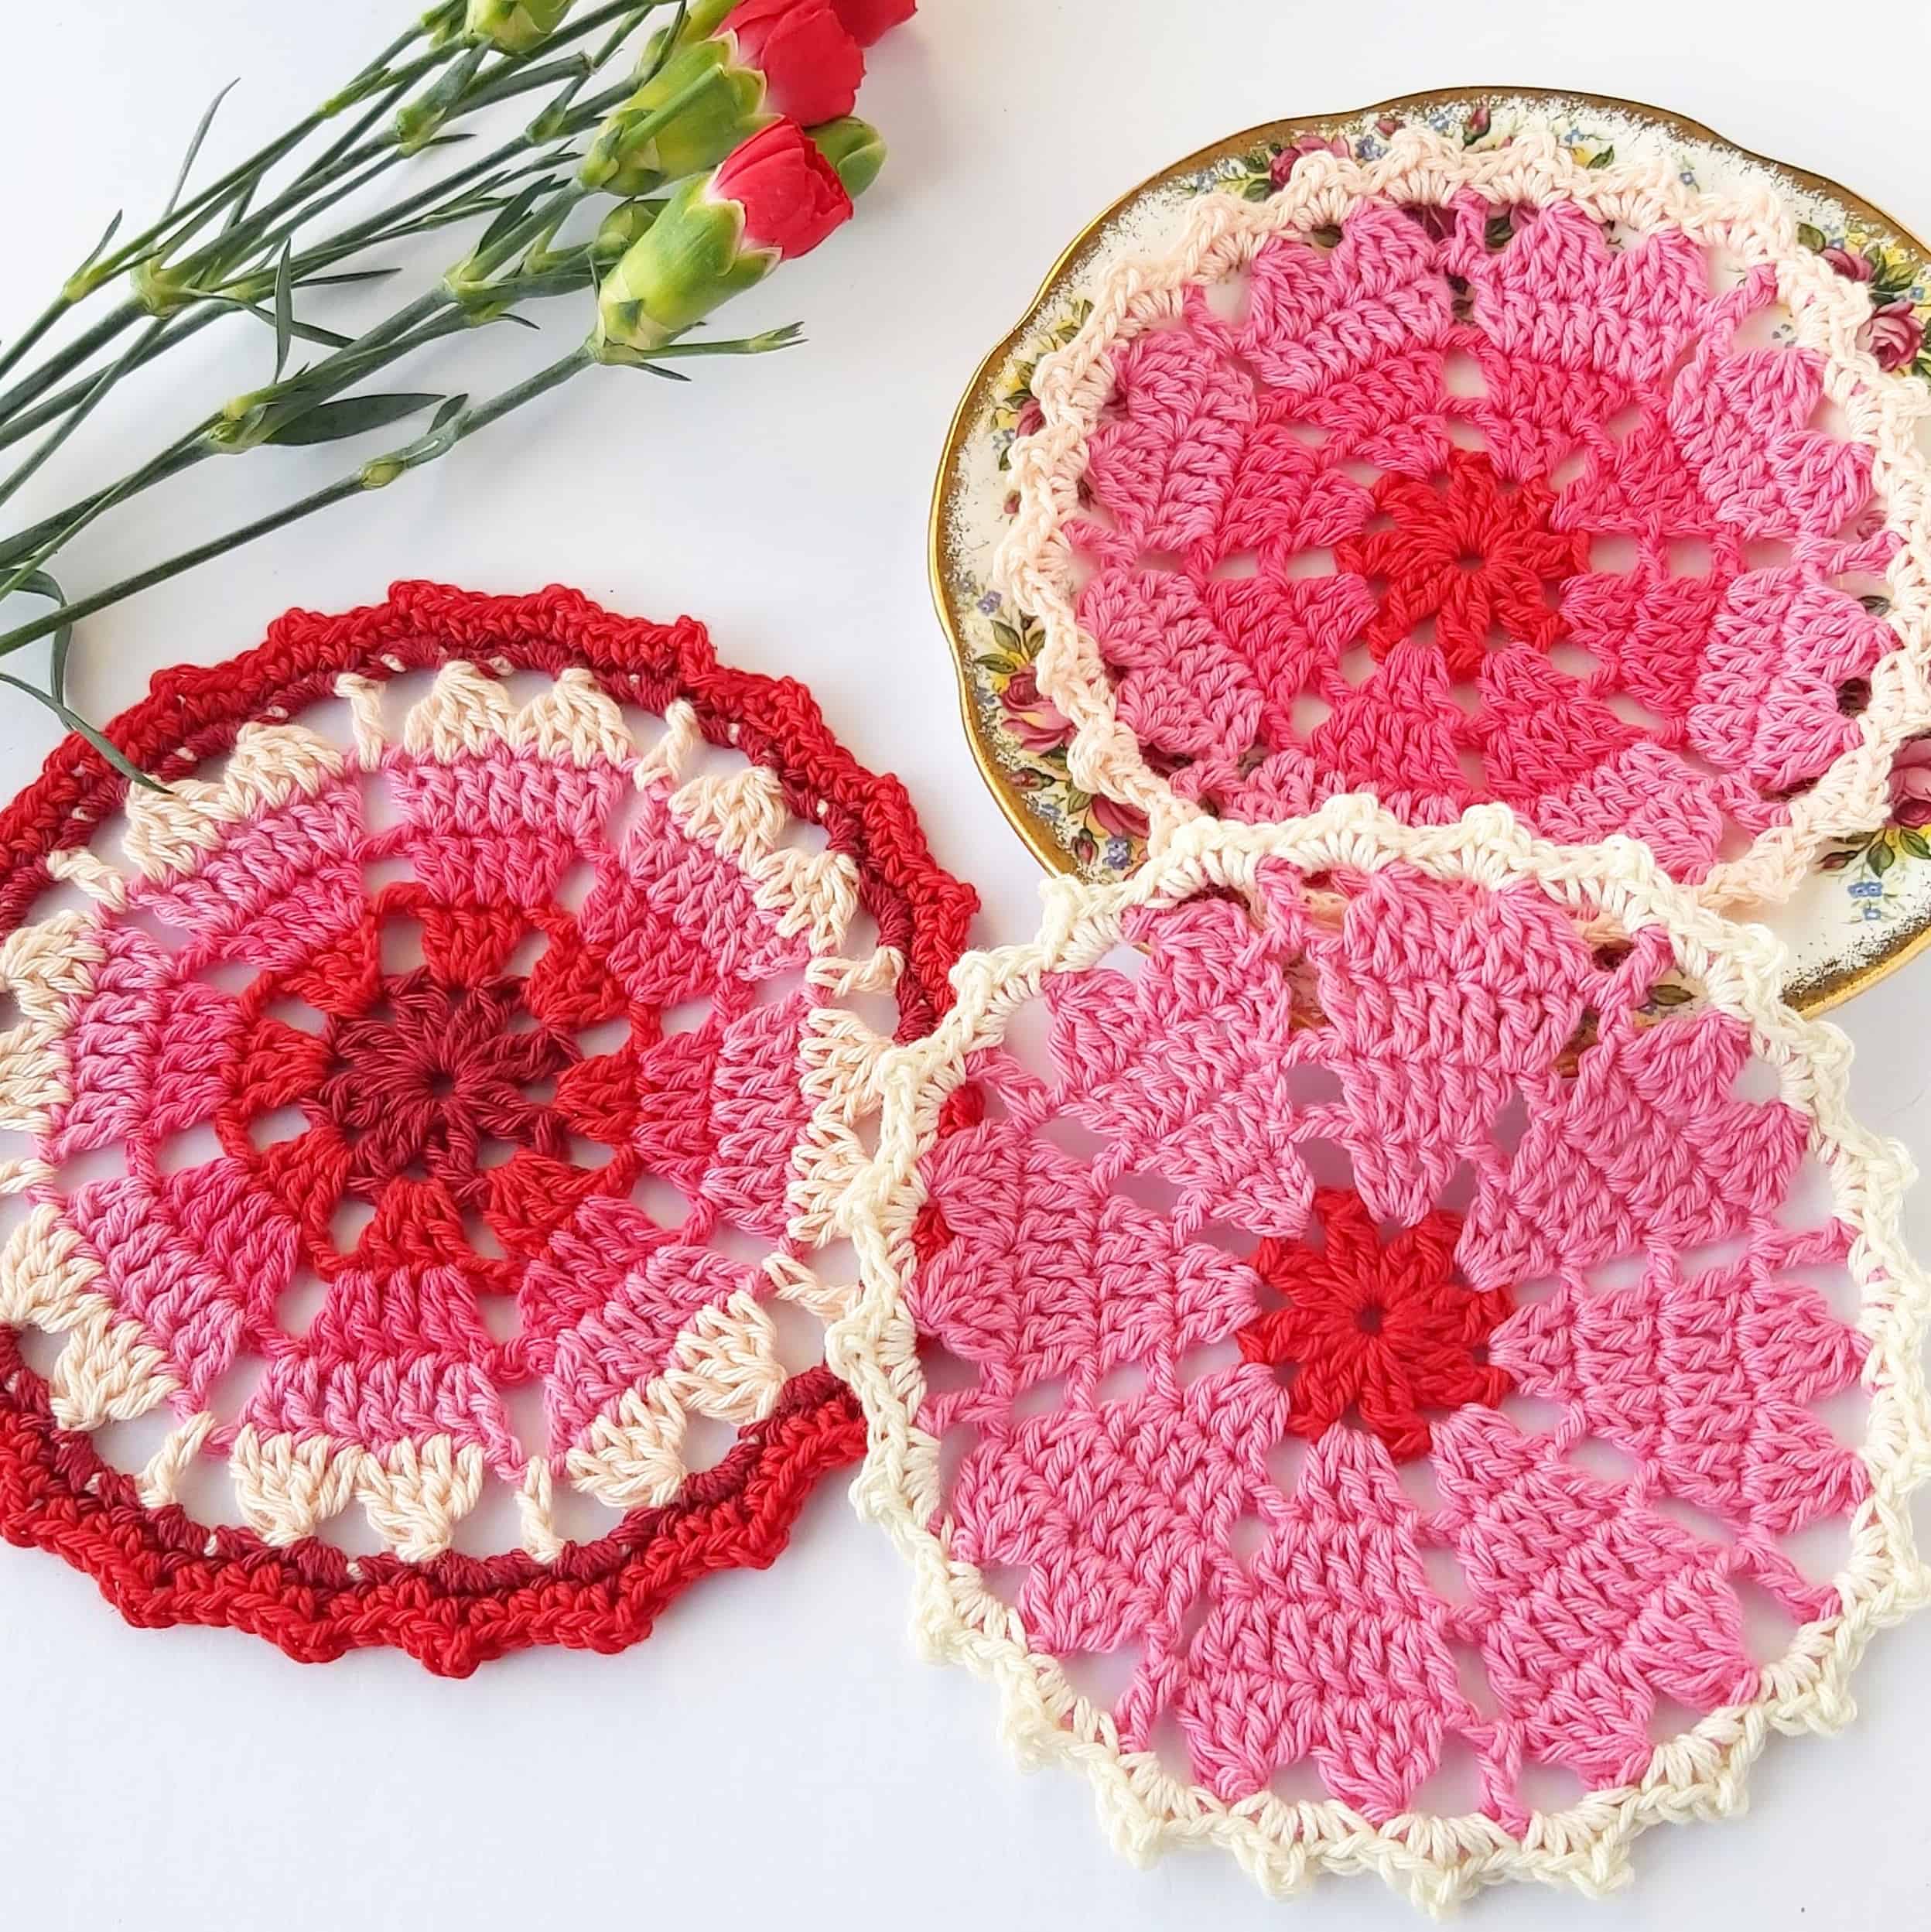 Crochet Heart coaster free pattern